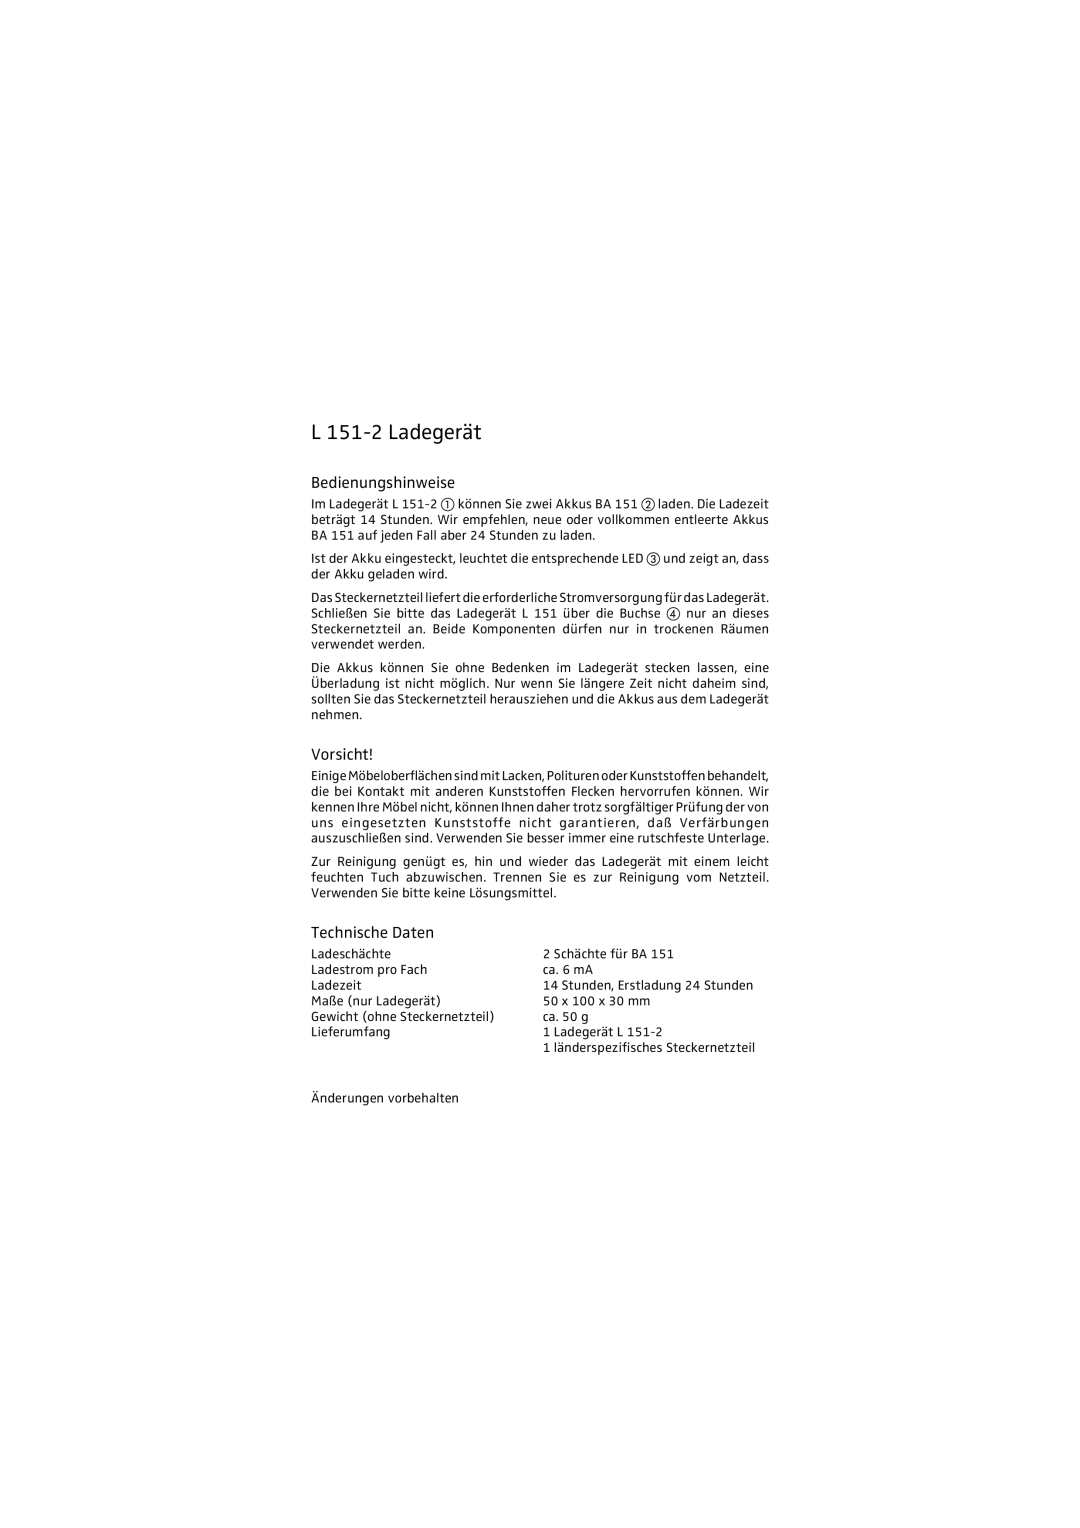 Sennheiser L151-2 manual L 151-2 Ladegerät, Bedienungshinweise, Vorsicht, Technische Daten 